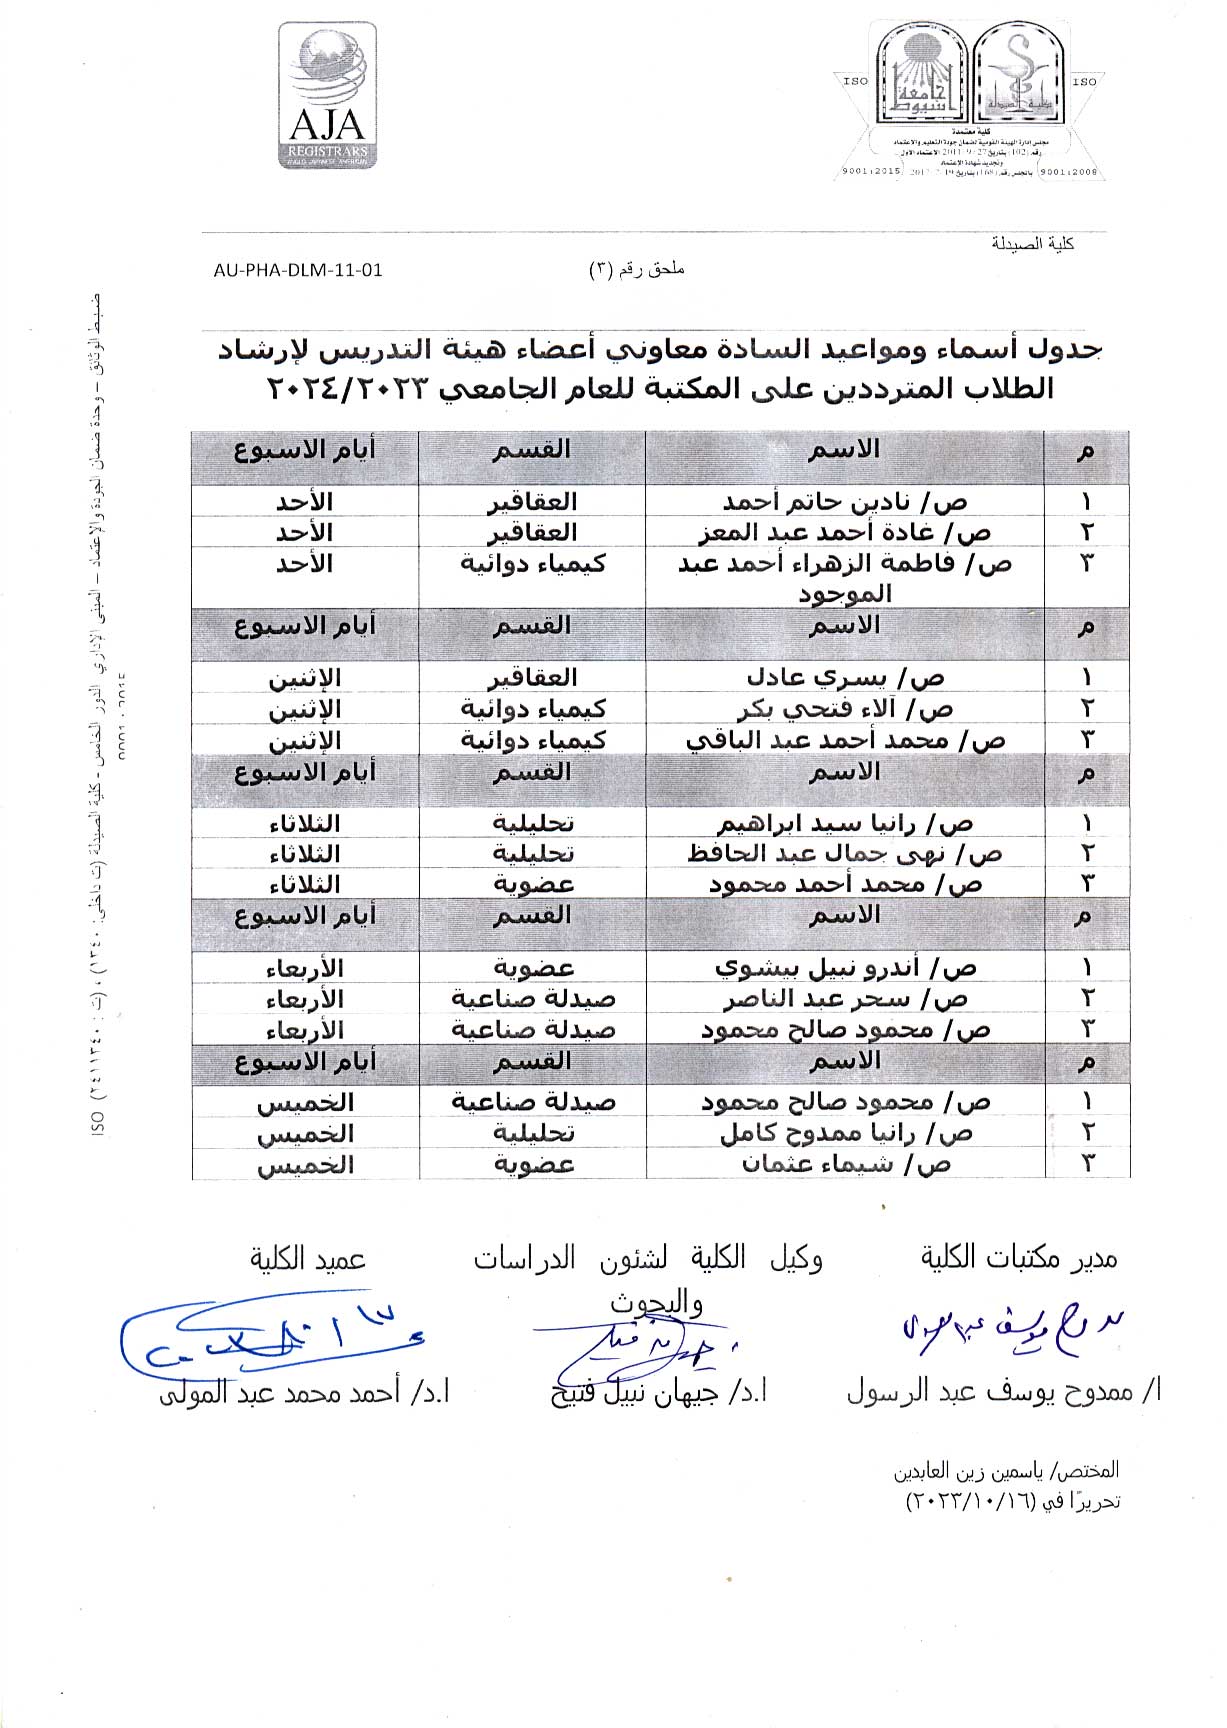 جدول أسماء ومواعيد السادة معاونى  أعضاء هيئة التدريس لإرشاد الطلاب المترددين على المكتبة